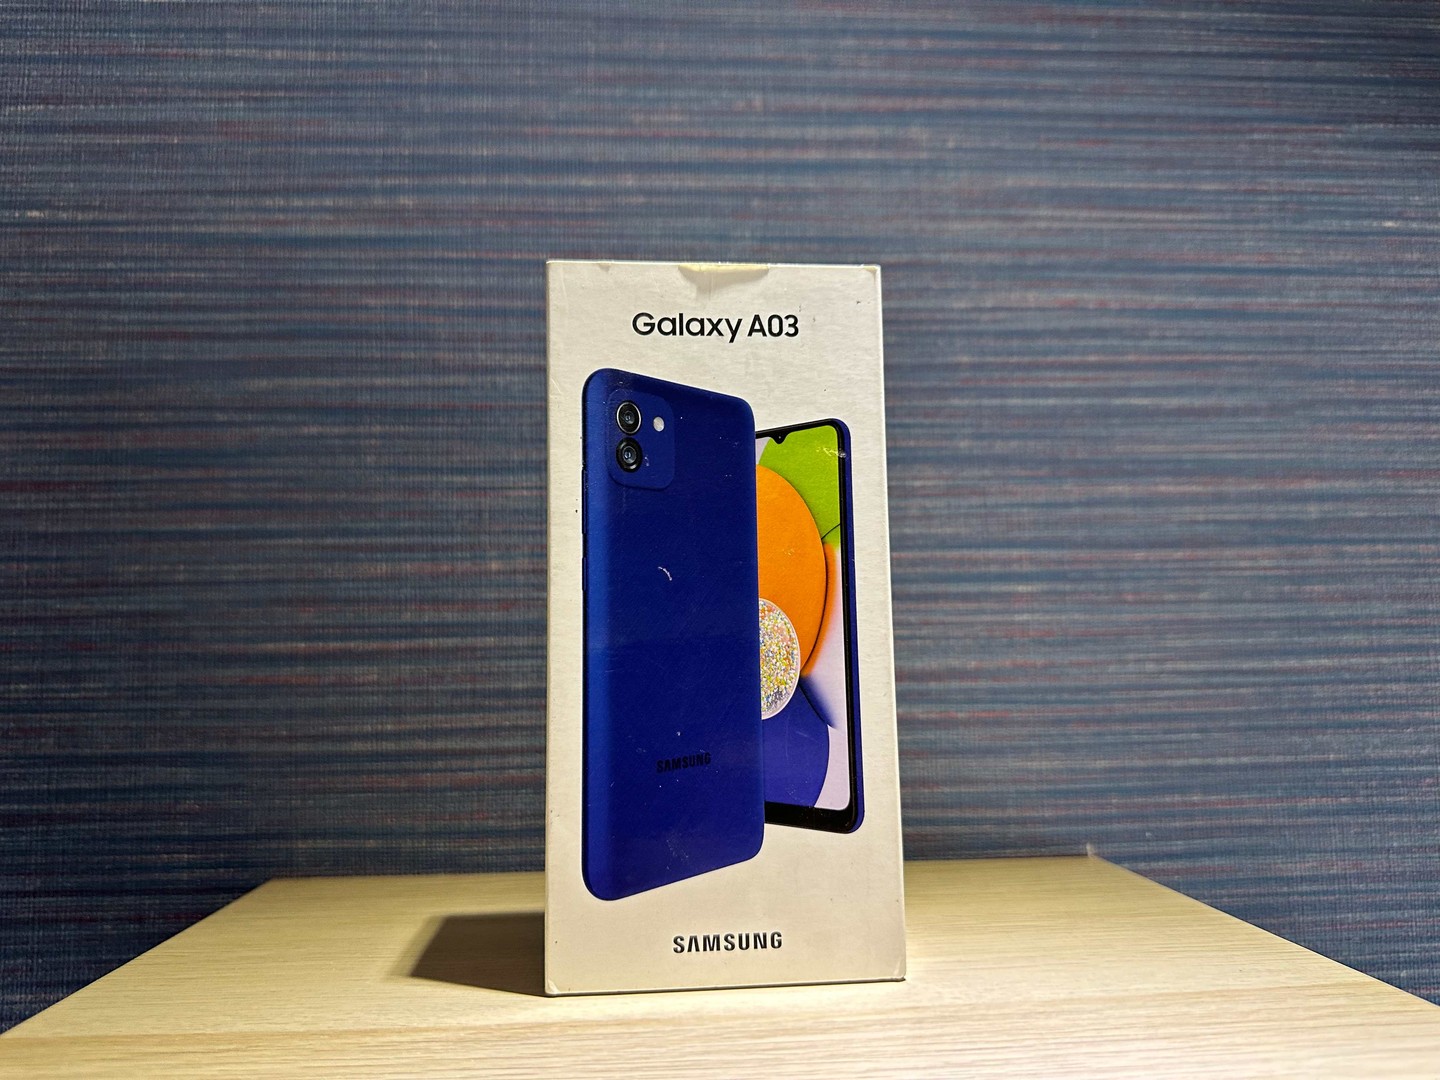 celulares y tabletas - Vendo Samsung Galaxy A03 64GB Azul Nuevo, Desbloqueado,GarantÍa, RD$ 6,800 NEG